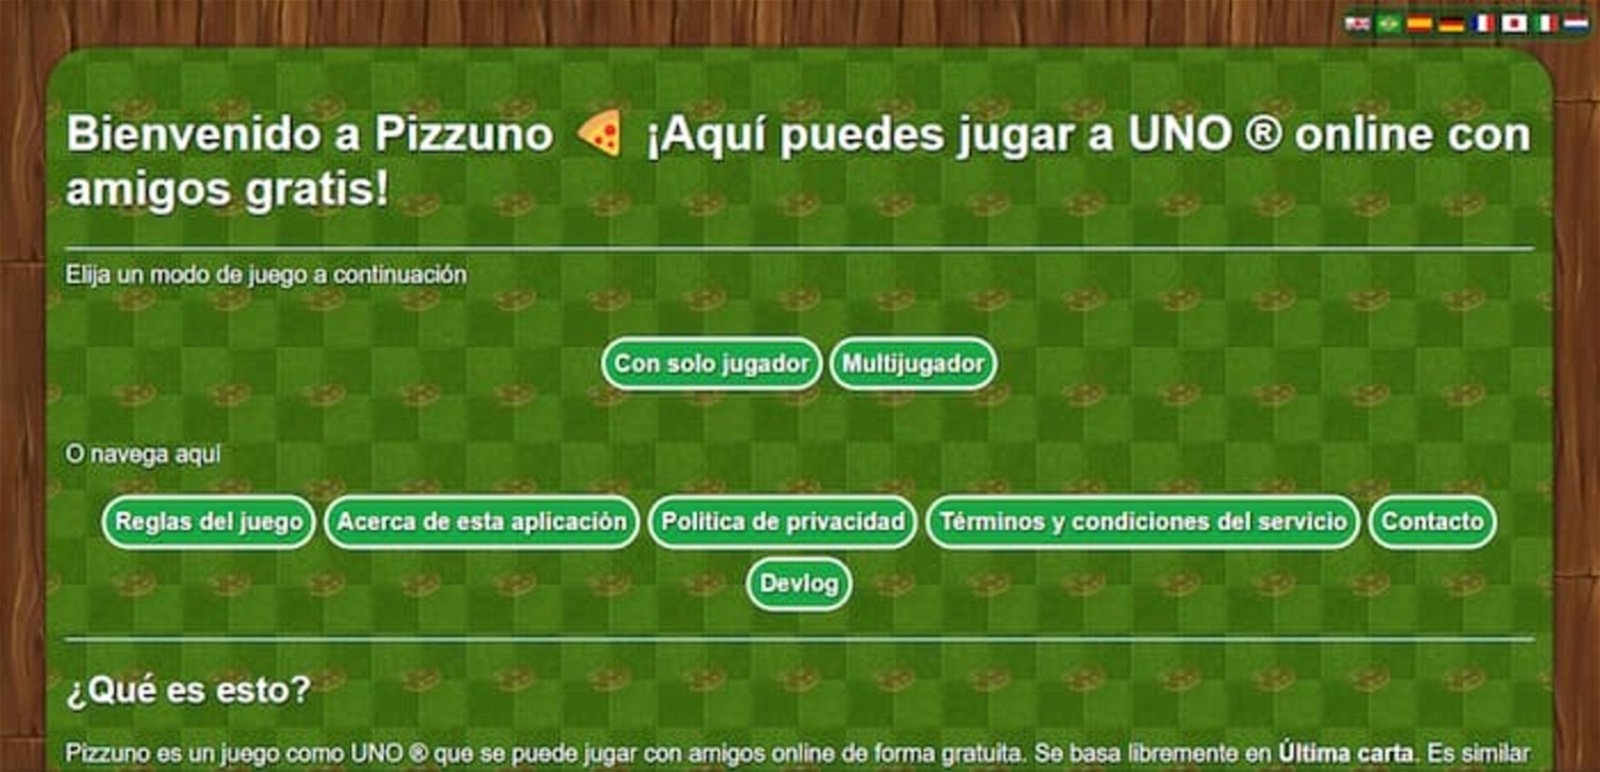 Así luce la interfaz de Pizzuno, una web en la que podrás jugar al Uno contra la IA o contra otras personas en tiempo real